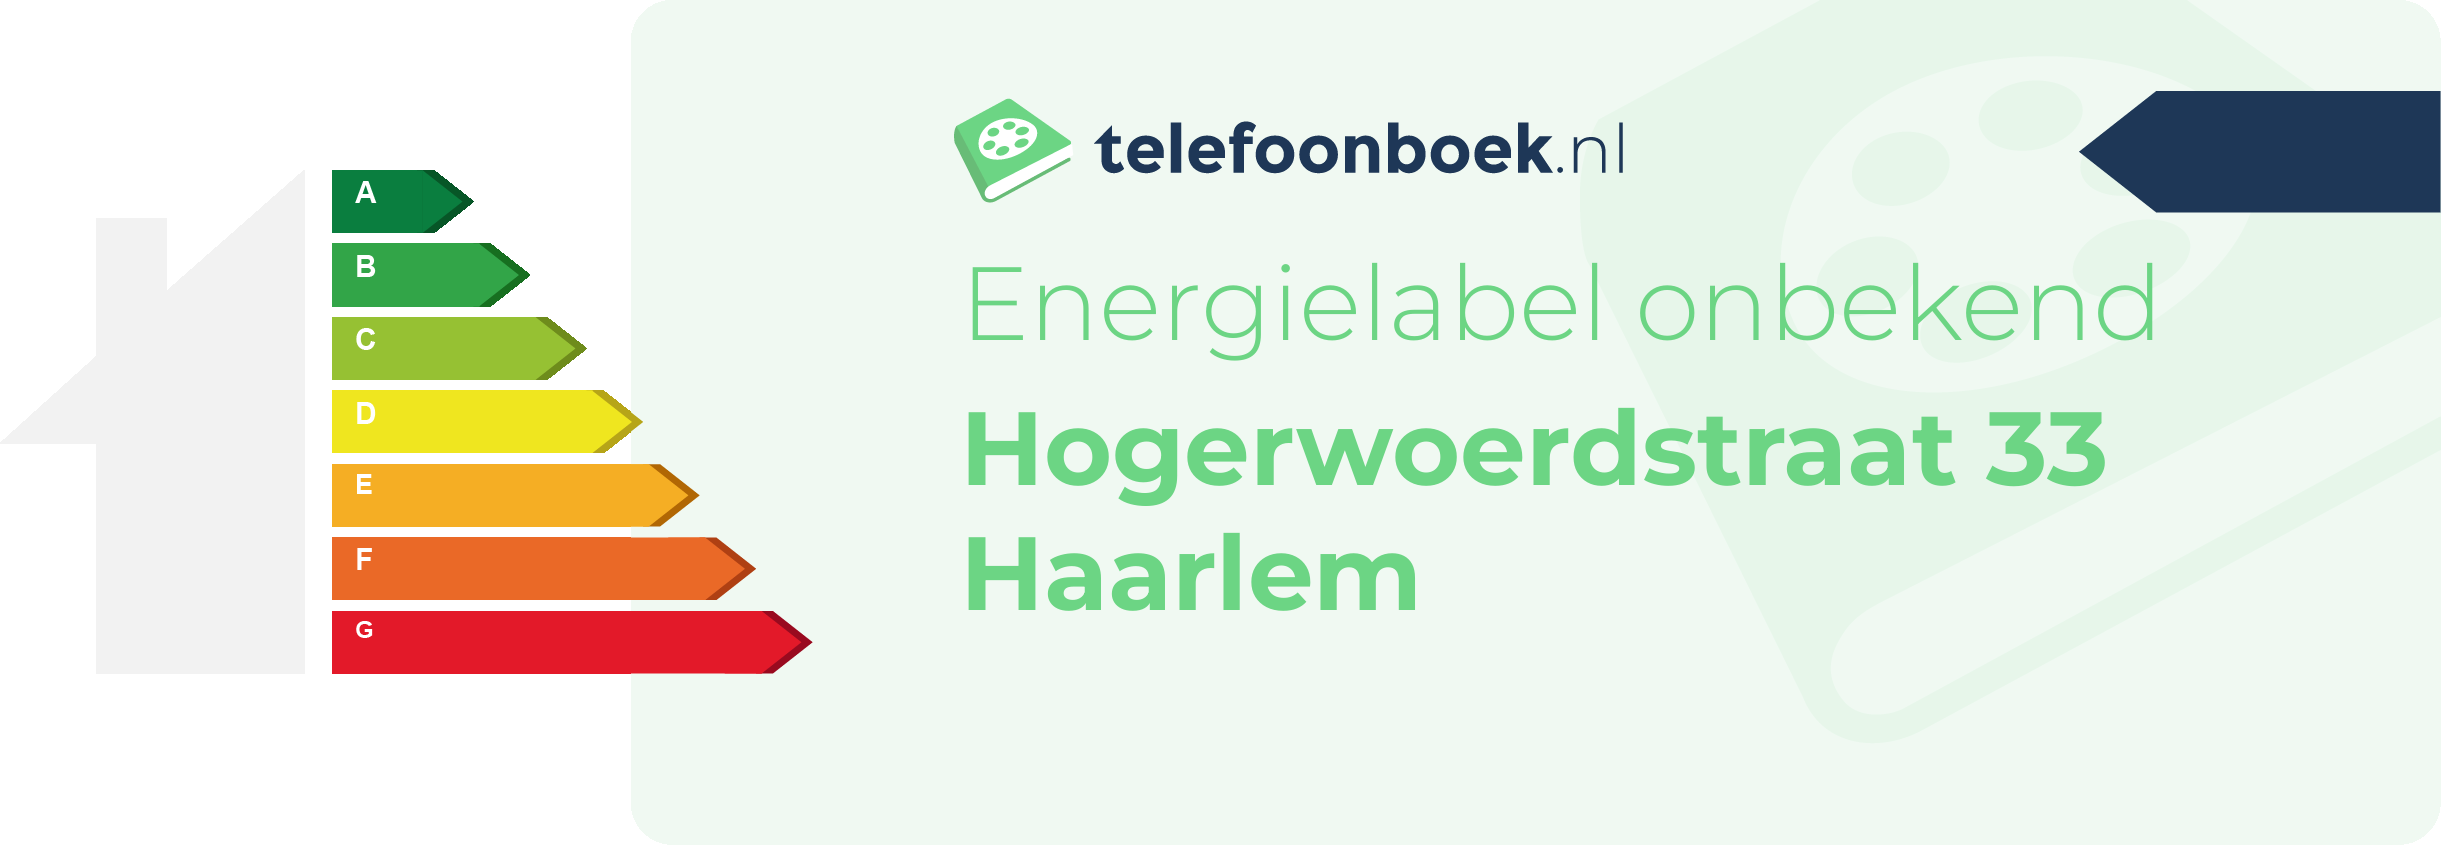 Energielabel Hogerwoerdstraat 33 Haarlem